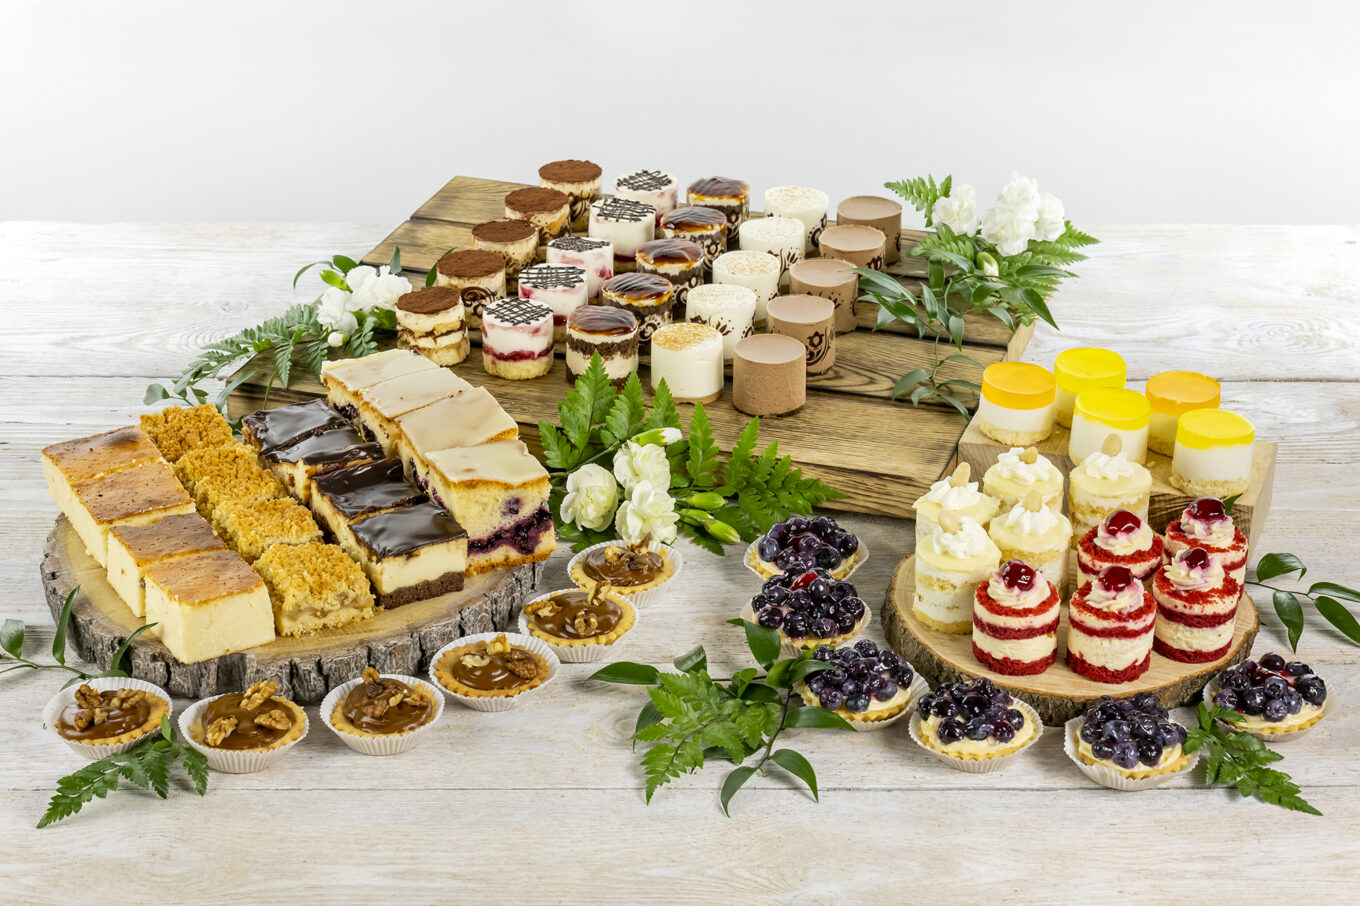 buffet dolce nano Cukiernia Jacek Placek è sinonimo del gusto delle torte fatte in casa a base di prodotti naturali.